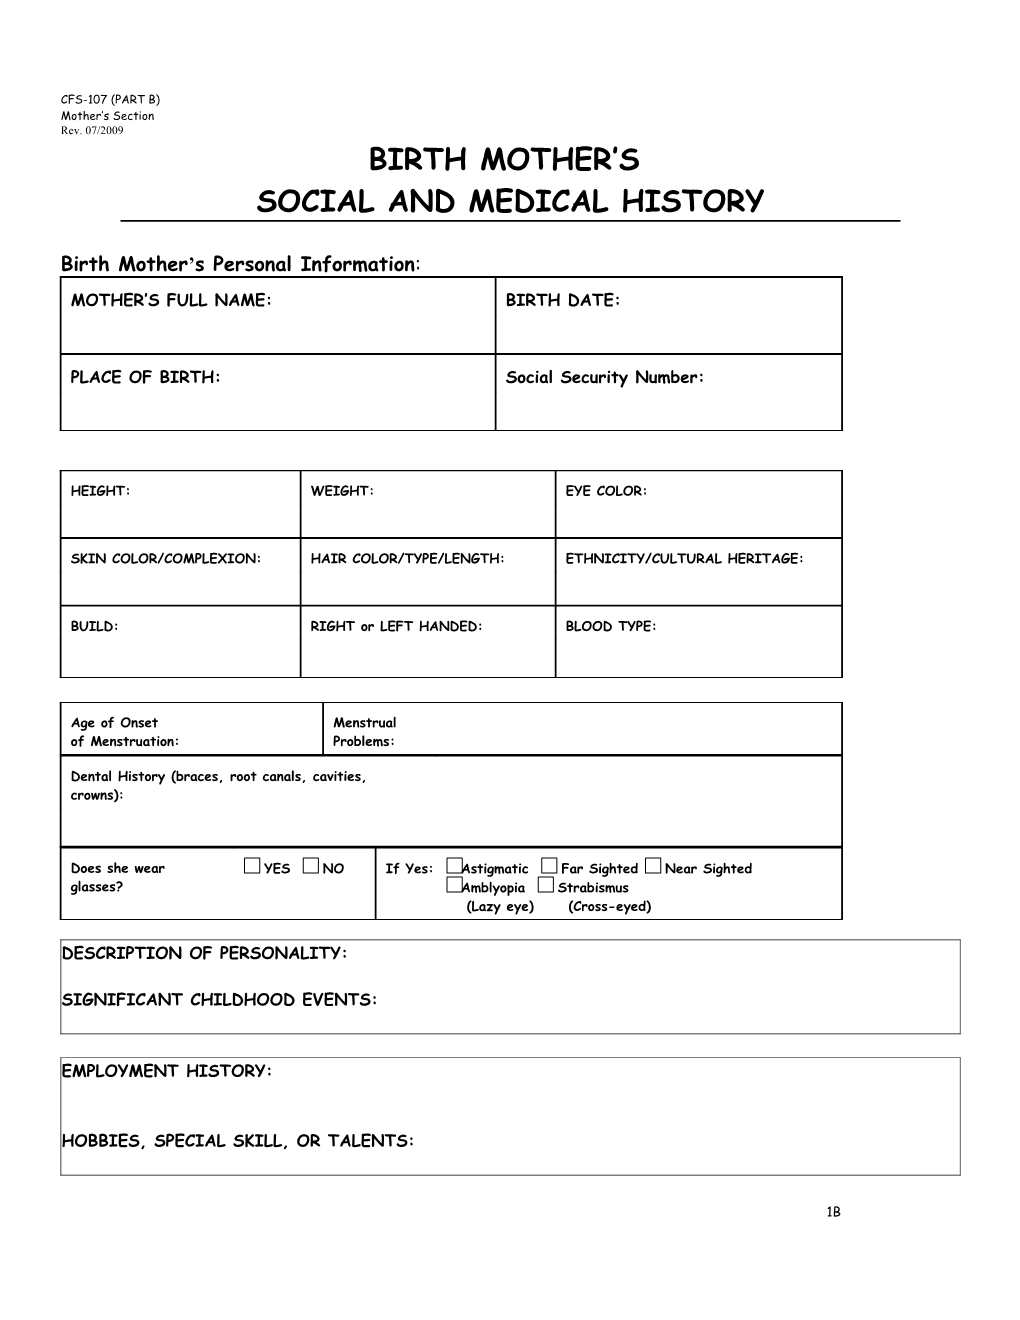 Social and Medical History